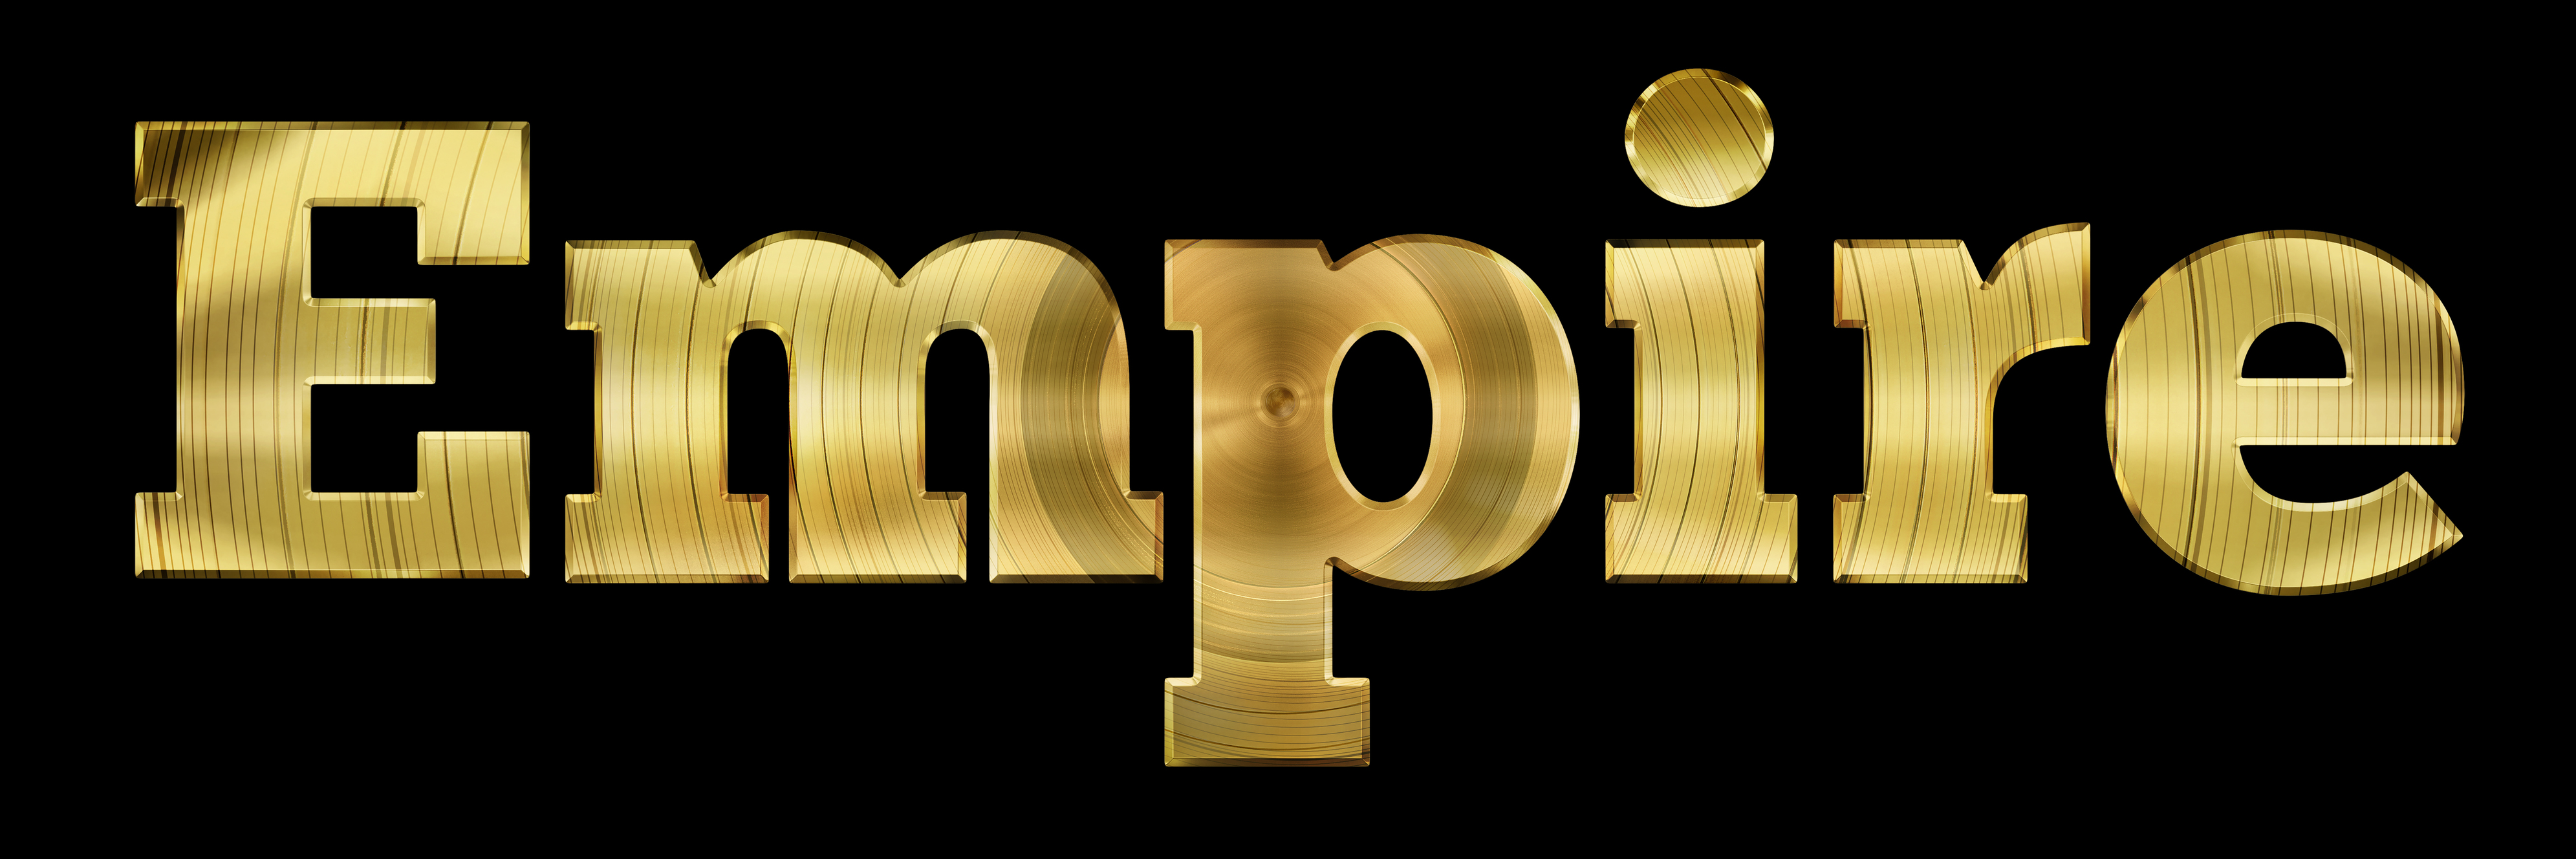 empire tv show logo 3983x1328